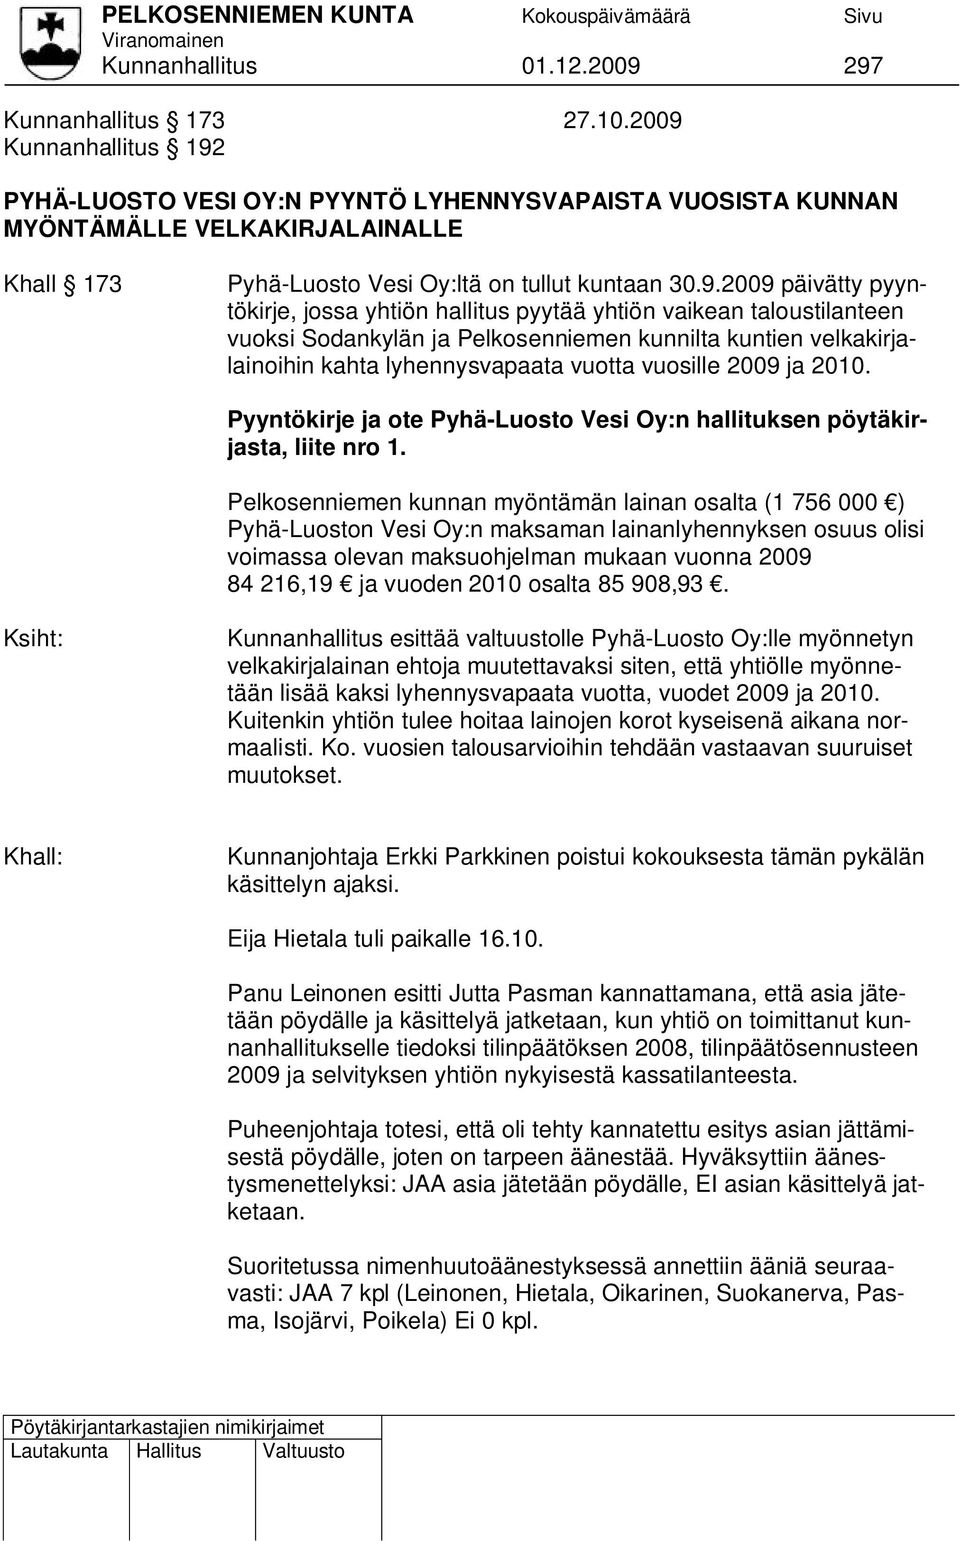 pyyntökirje, jossa yhtiön hallitus pyytää yhtiön vaikean taloustilanteen vuoksi Sodankylän ja Pelkosenniemen kunnilta kuntien velkakirjalainoihin kahta lyhennysvapaata vuotta vuosille 2009 ja 2010.